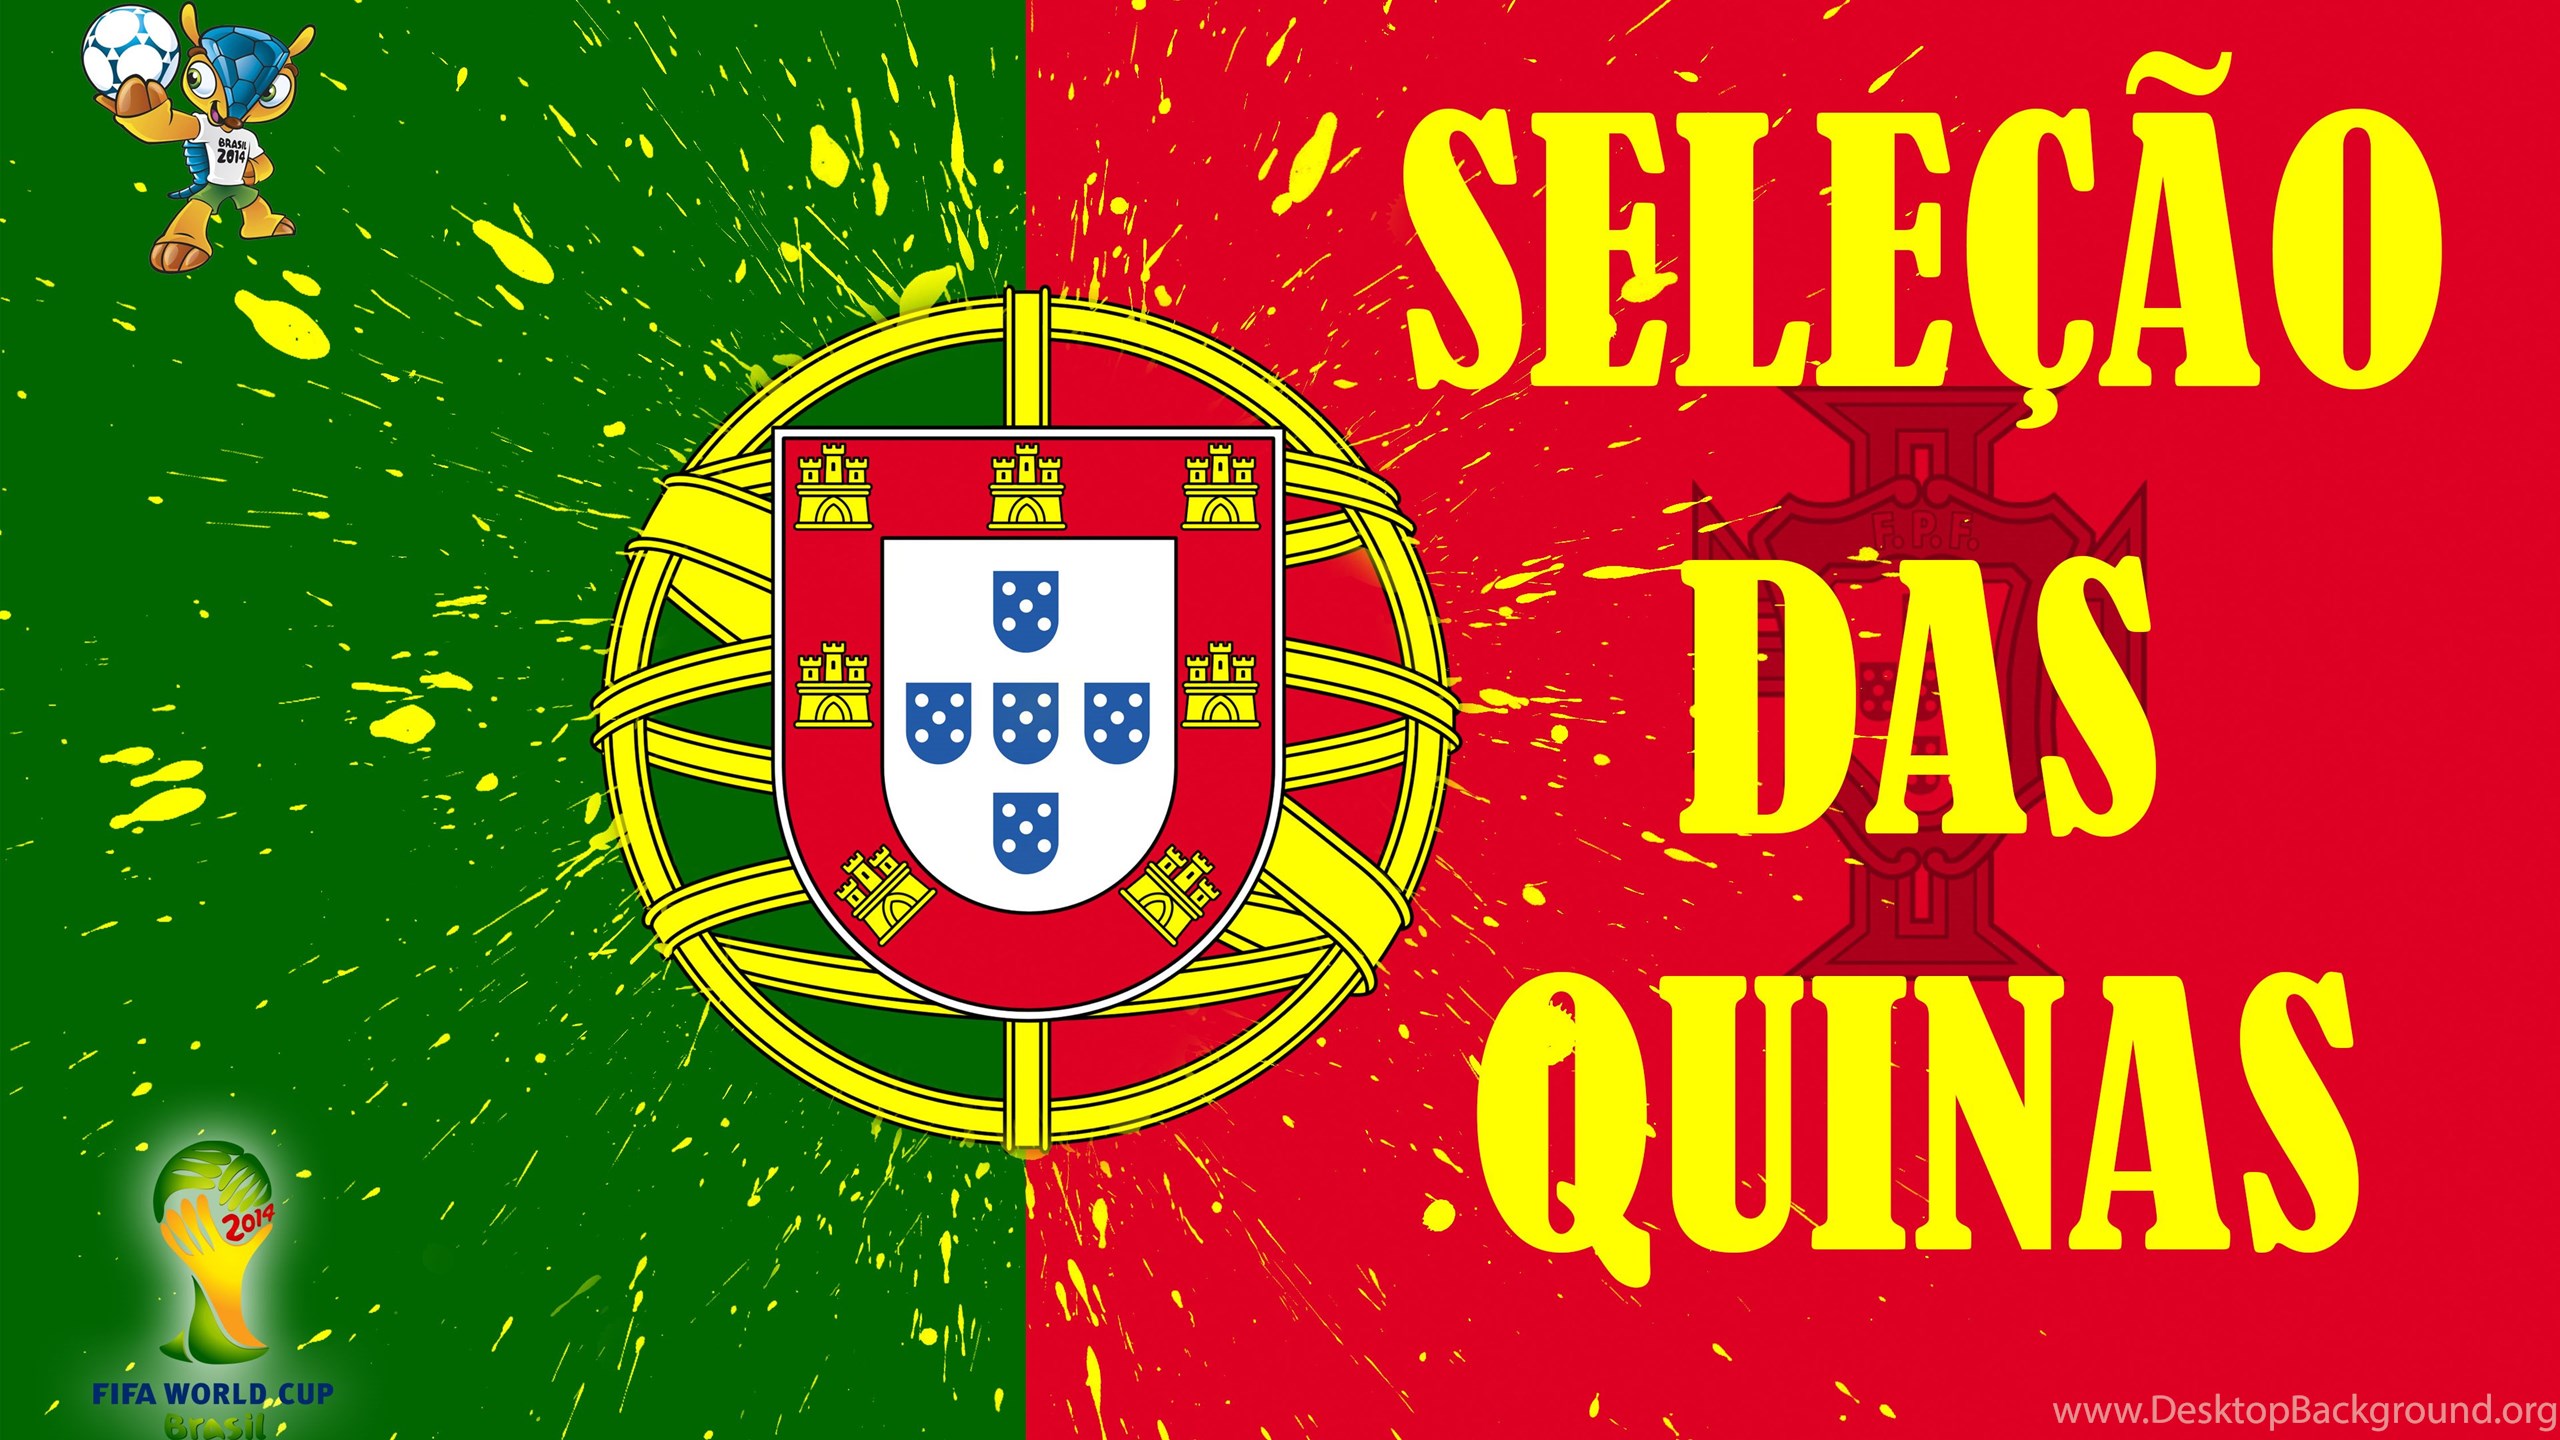 Selecao Das Quinas 2014 Portugal Football Crest Logo World Cup Desktop Background